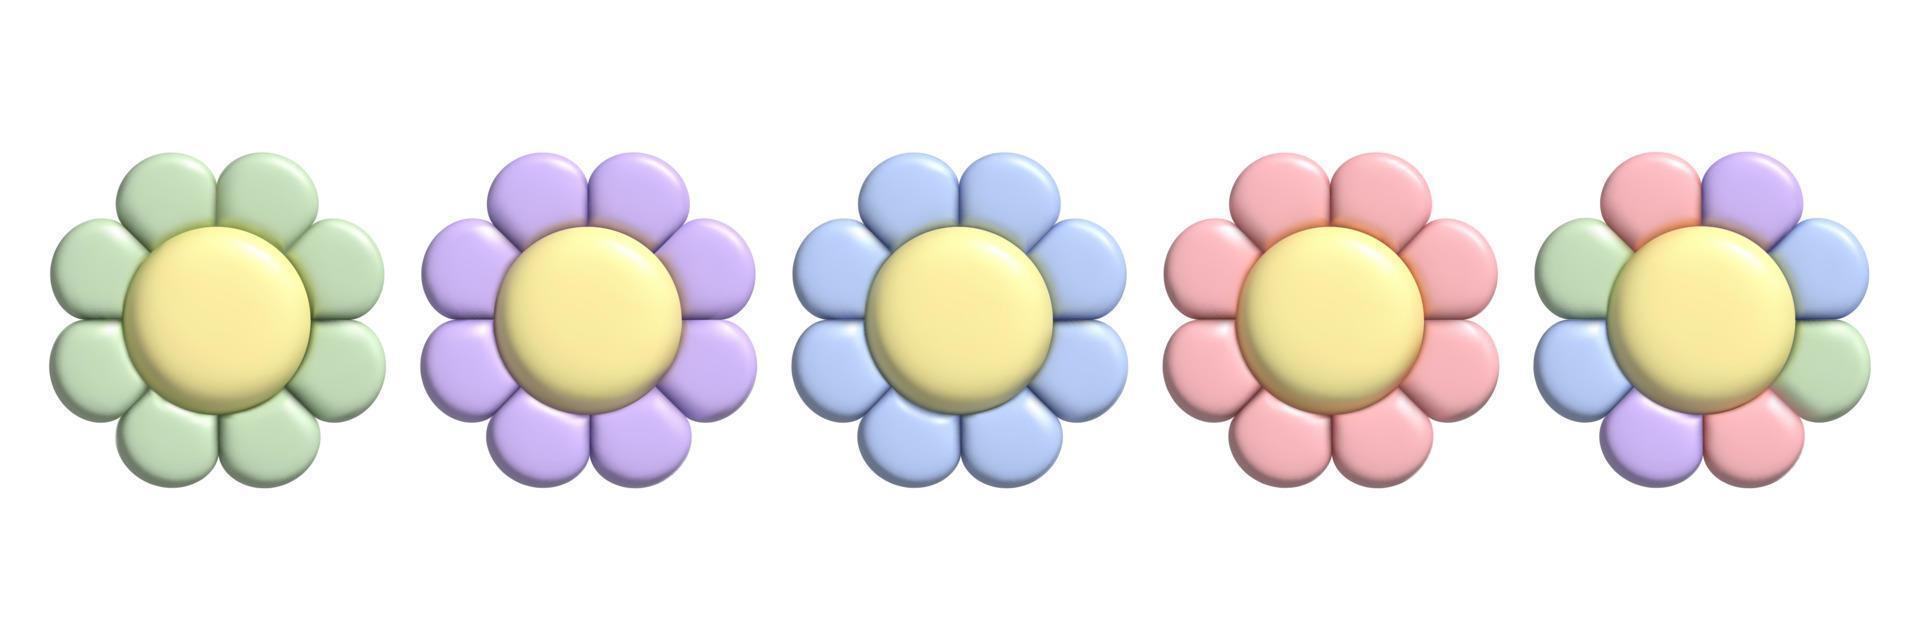 Conjunto de flores pastel 3d con efecto plastilina. lindas pegatinas de margarita y2k en un moderno estilo de plástico. vector